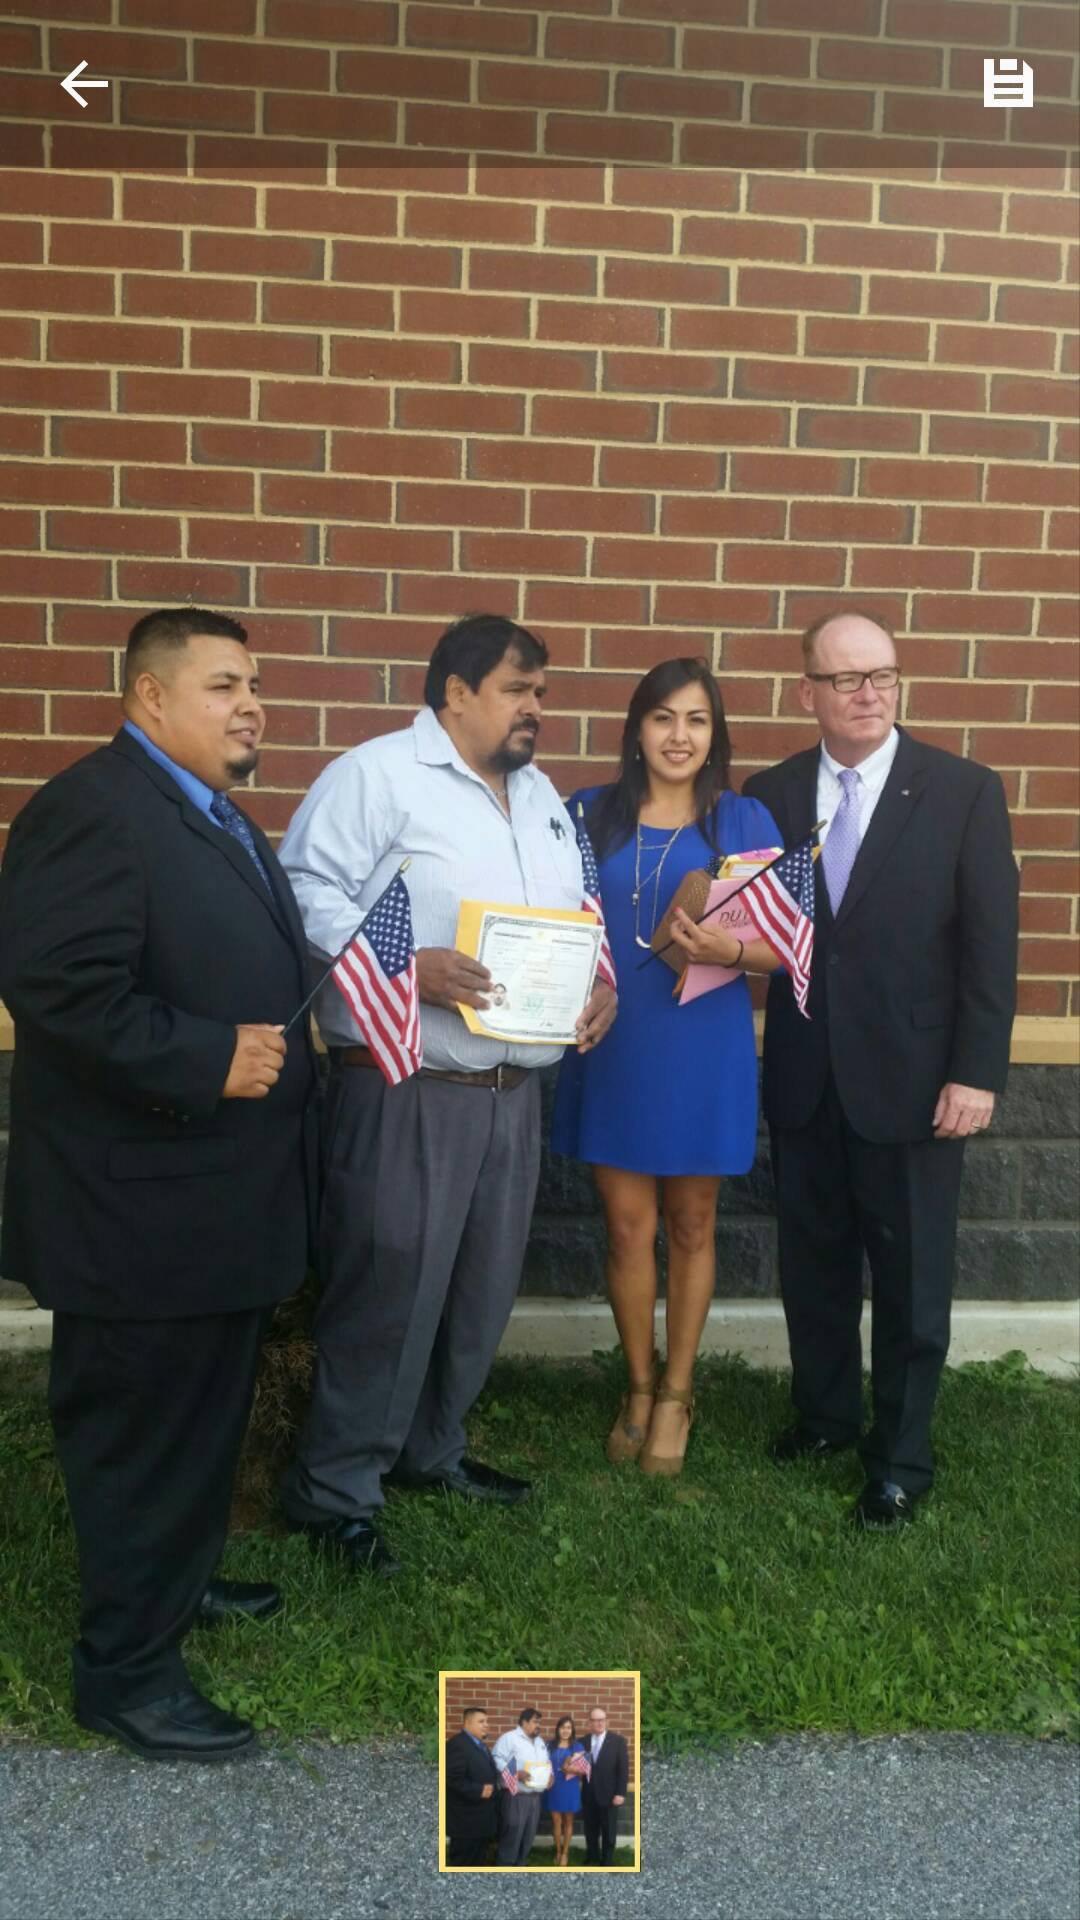 <div>Parte de la familia Rodríguez se hizo ciudadana estadounidense el mismo día, de izquierda a derecha: Erick (sobrino de Humberto), Humberto y Karla (hija de Humberto), junto al alcalde de Poughkeepsie, Rob Rolison.</div>